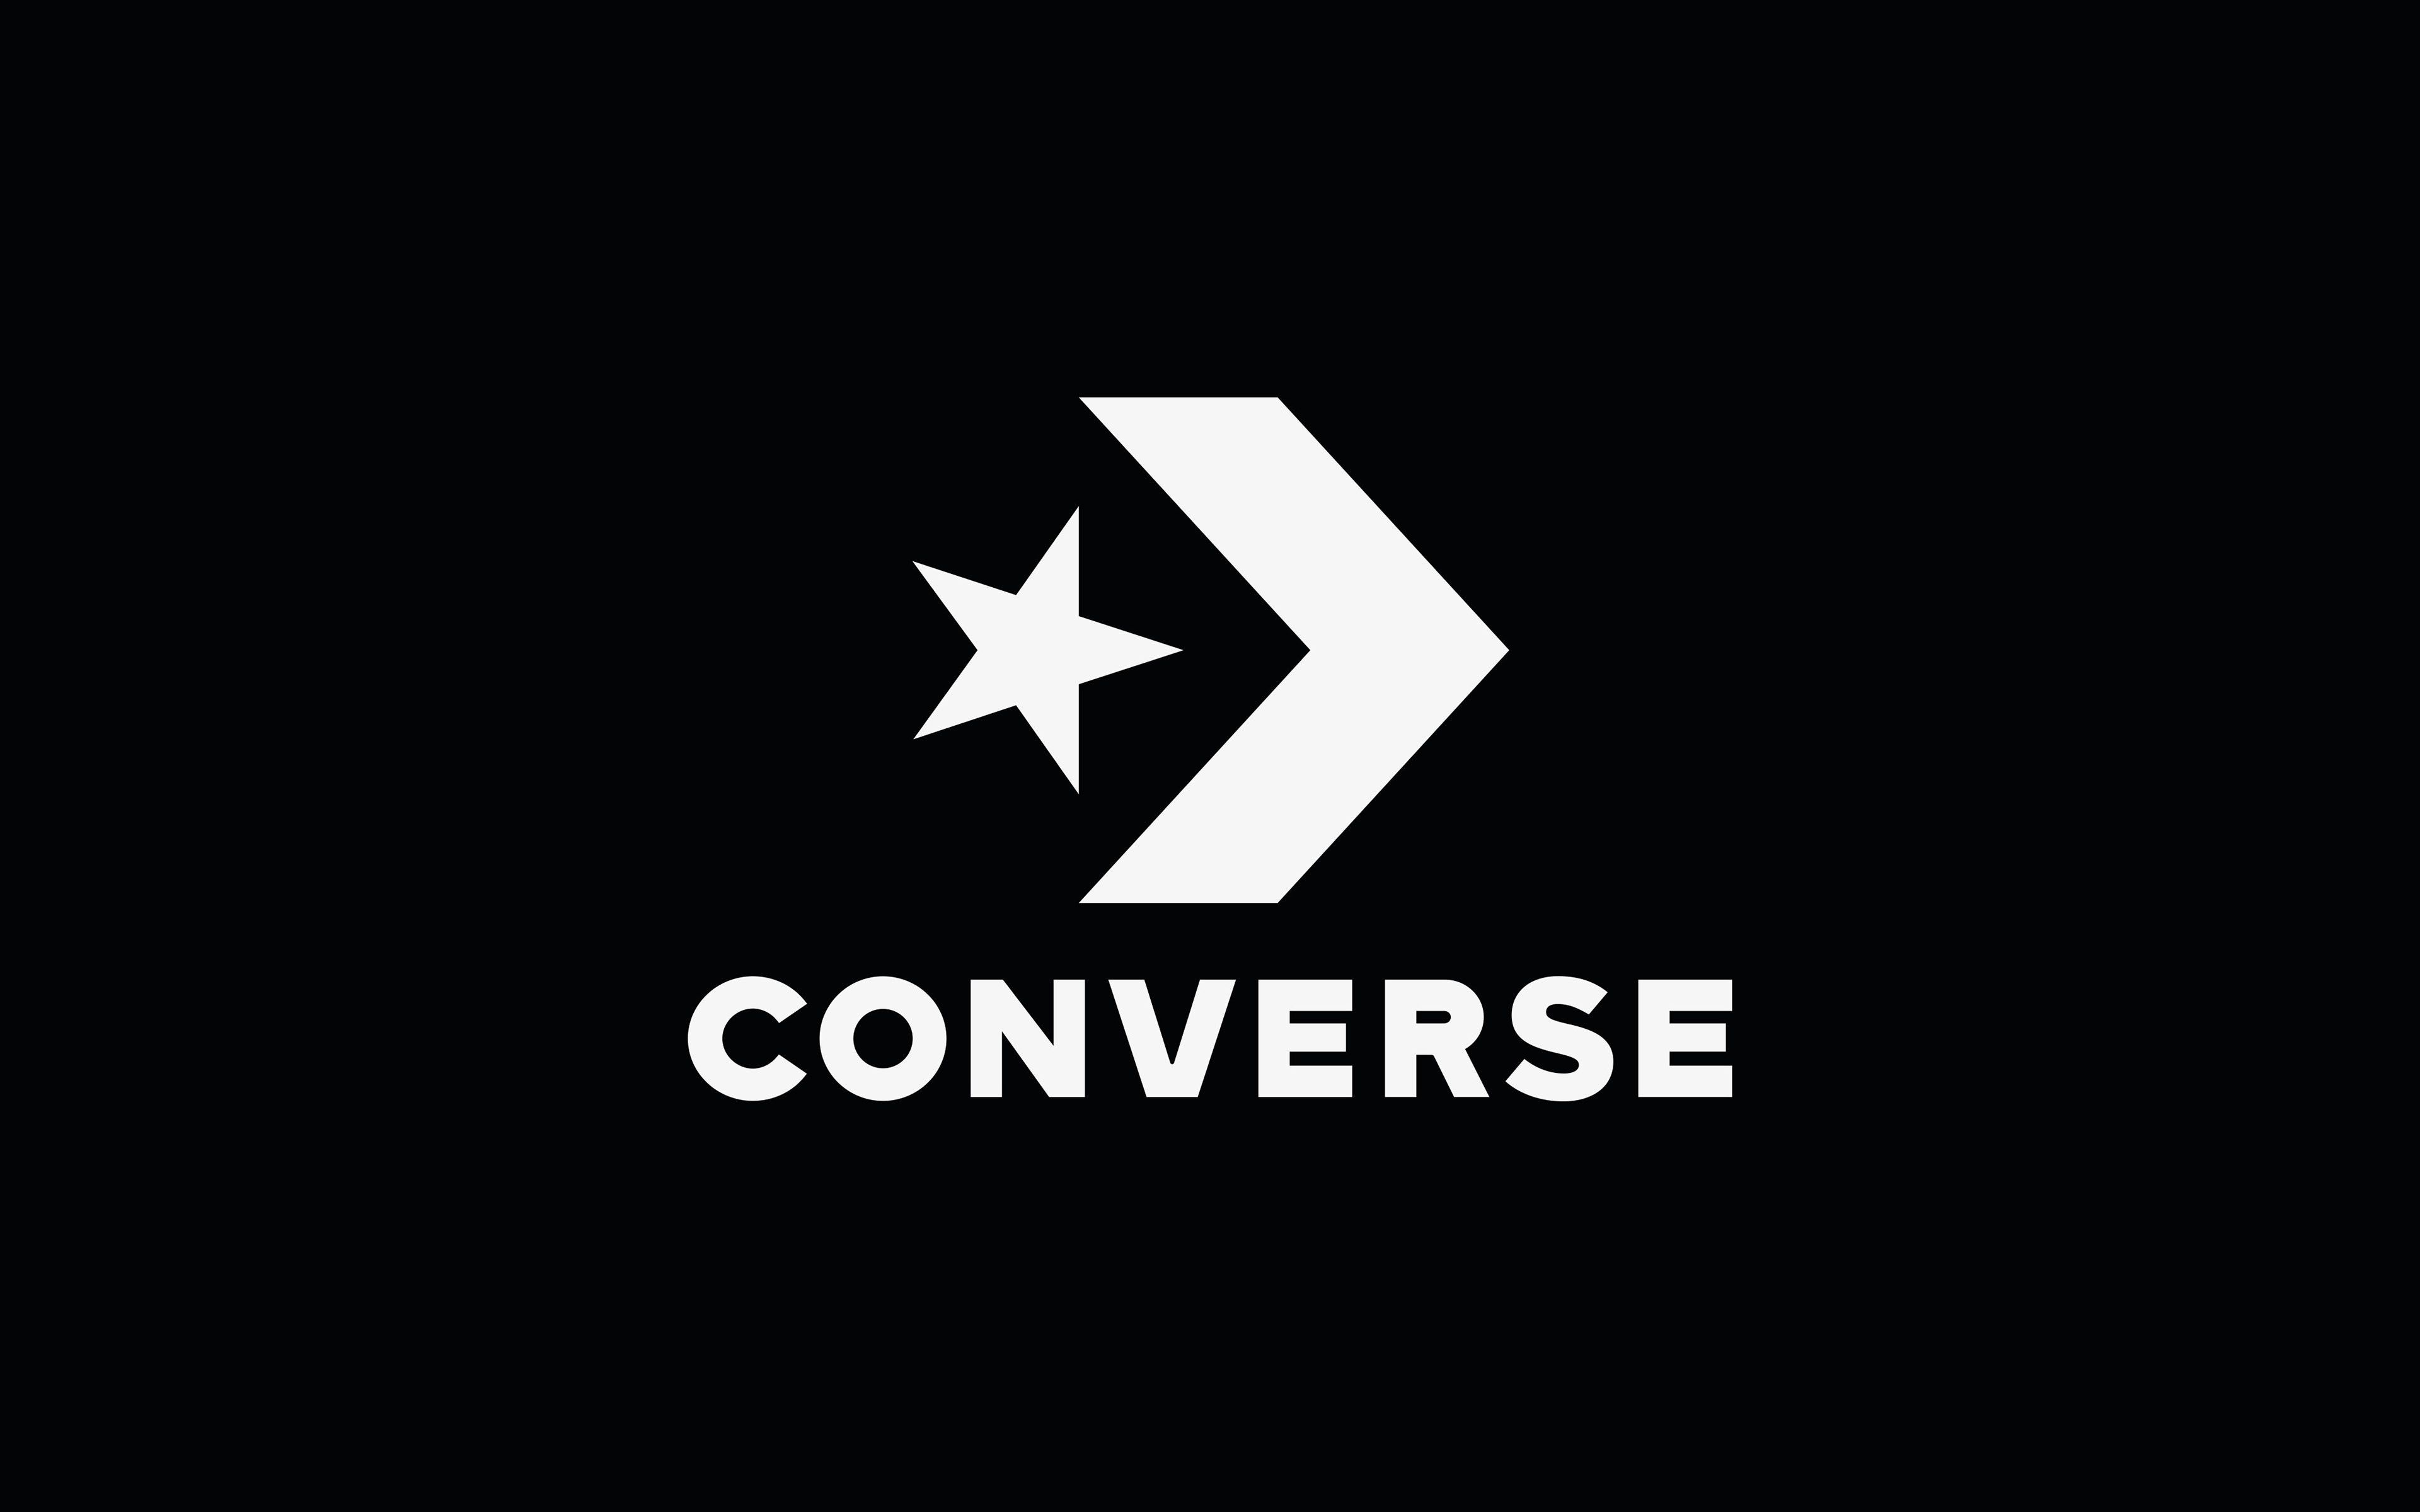 Fondos de pantalla de Converse - FondosMil